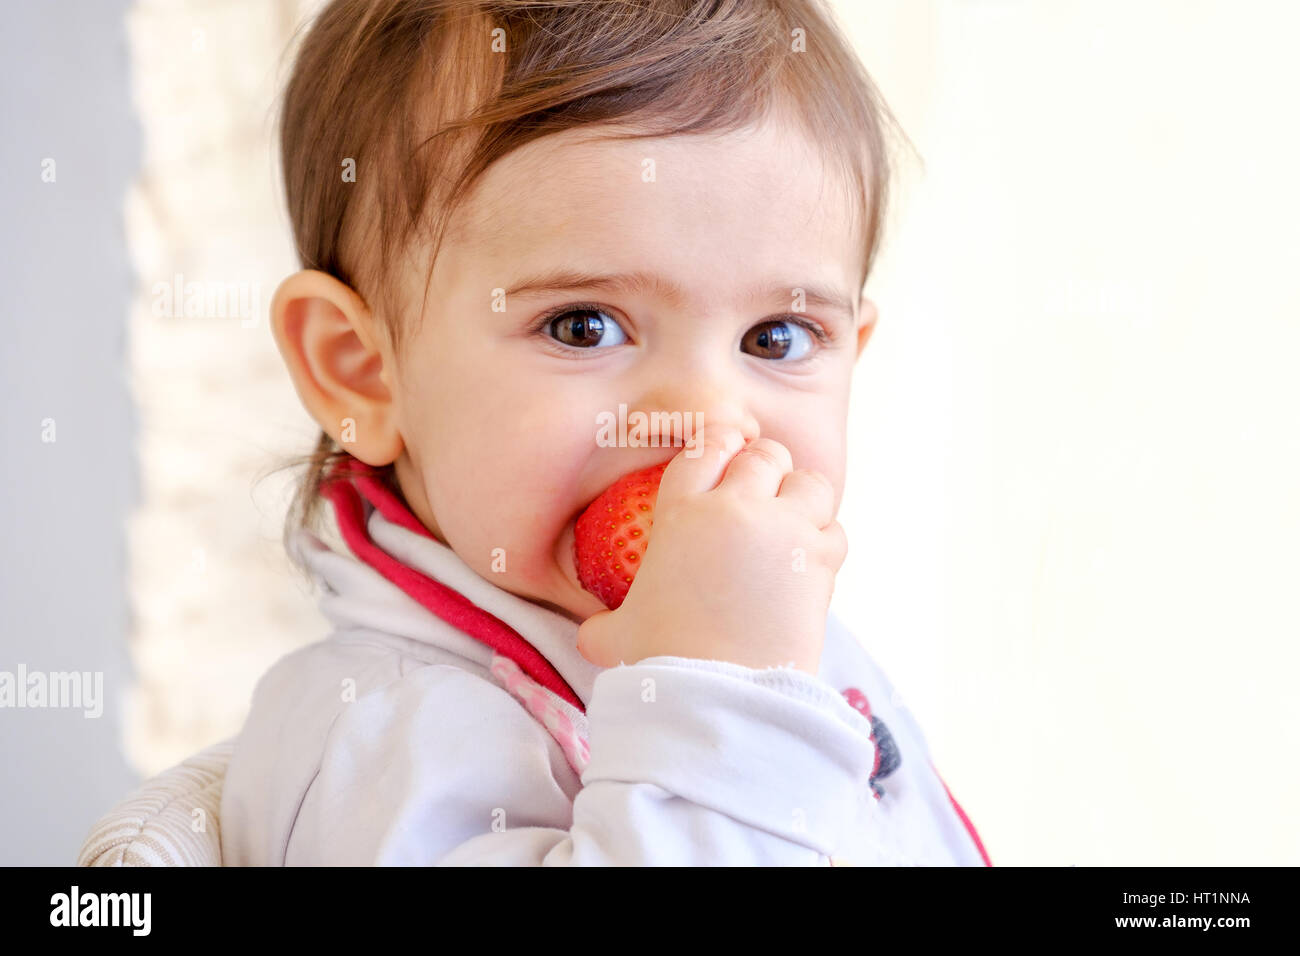 Morsure de bébé nouveau-né de fraises Fruits manger Banque D'Images